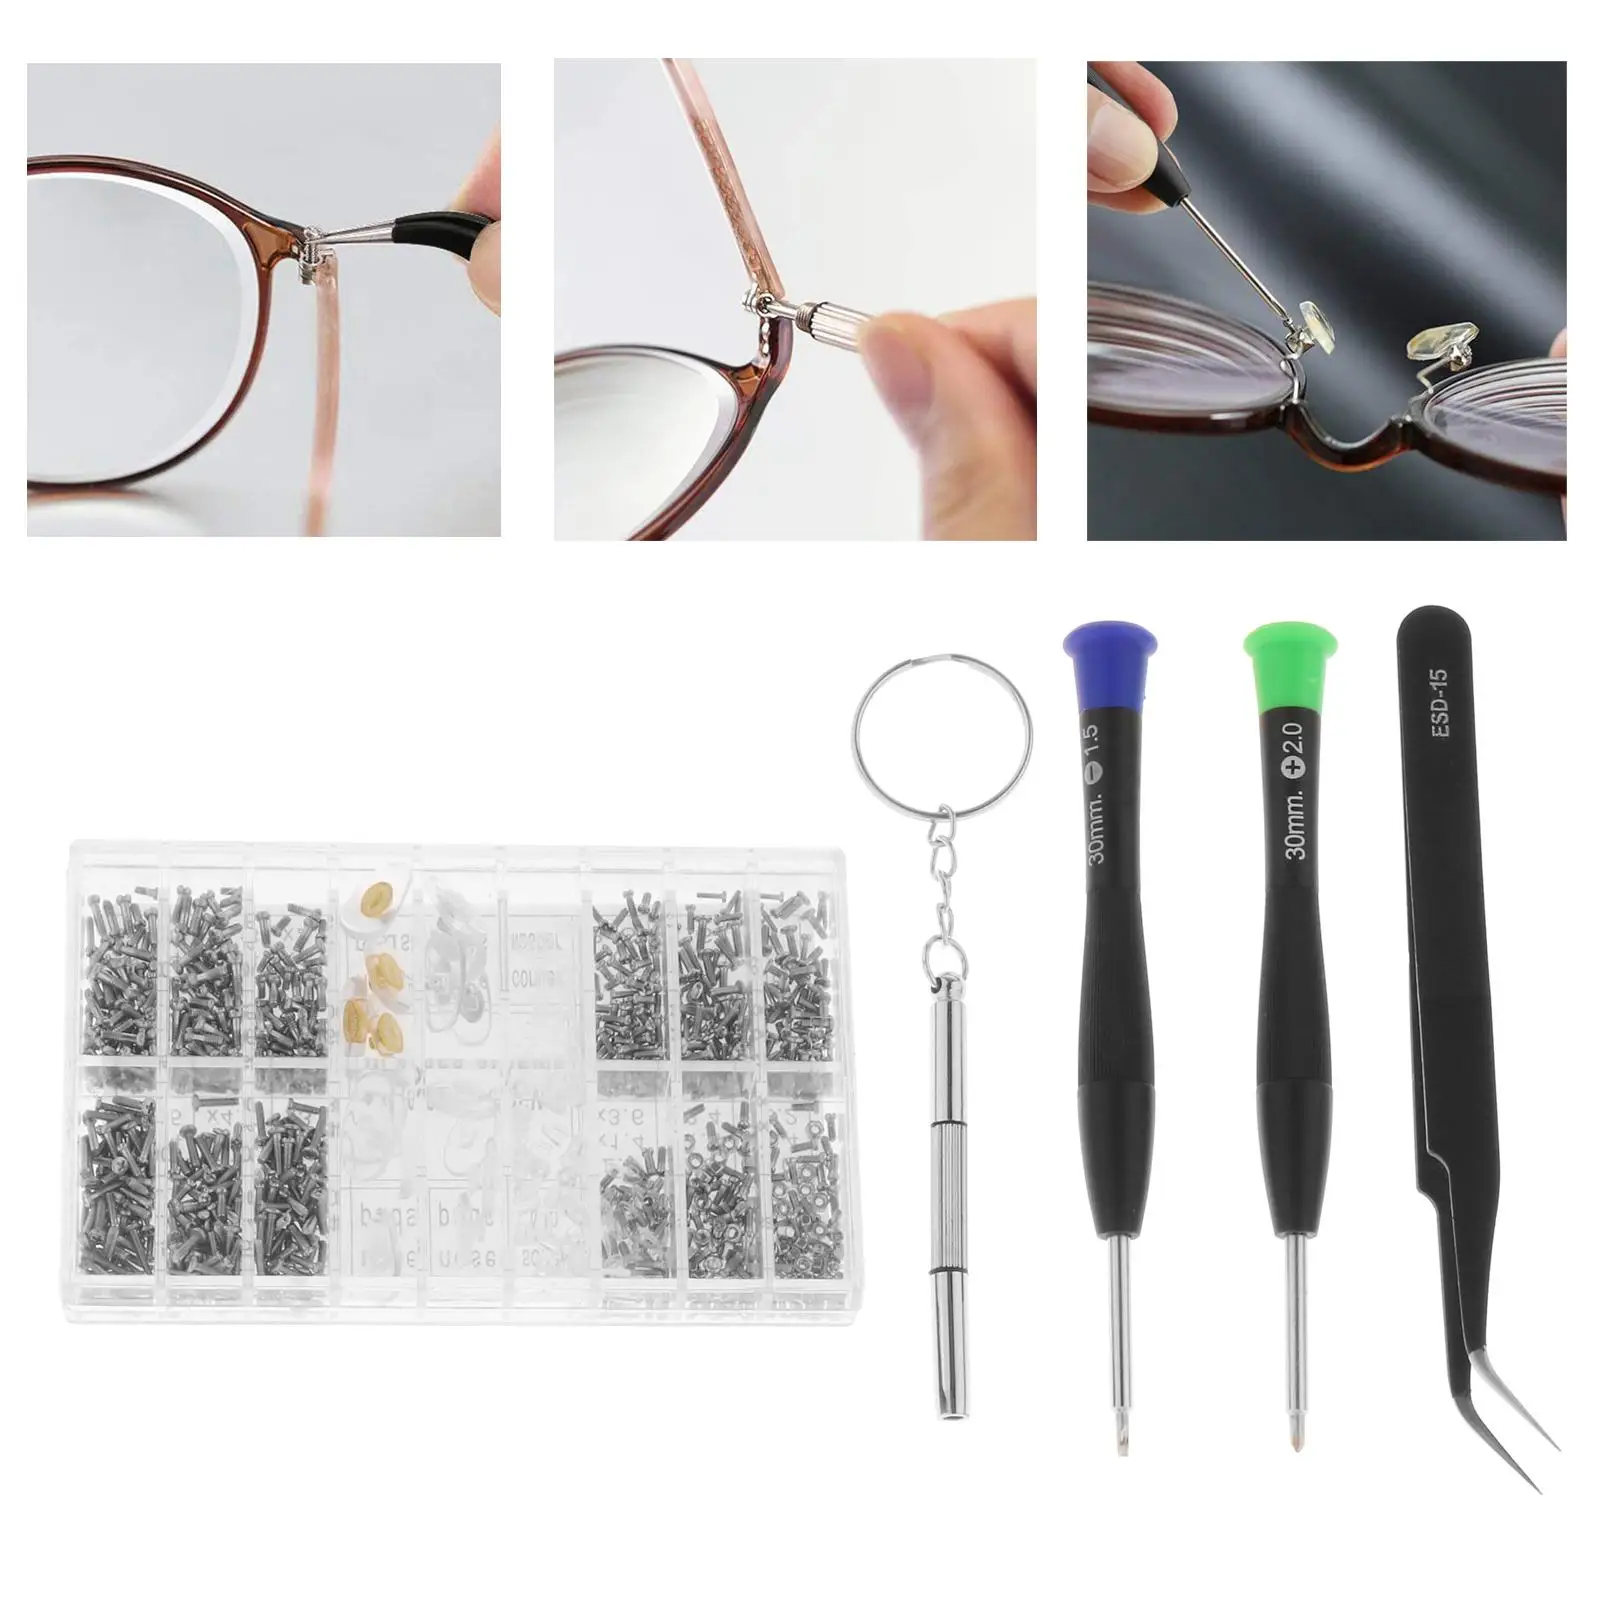 Eyeglasses Repair Kit Include Nose Pads Stainless Steel Screws Eye Glass Repairing Tool for Eyeglass Eyewear Watch Sunglass